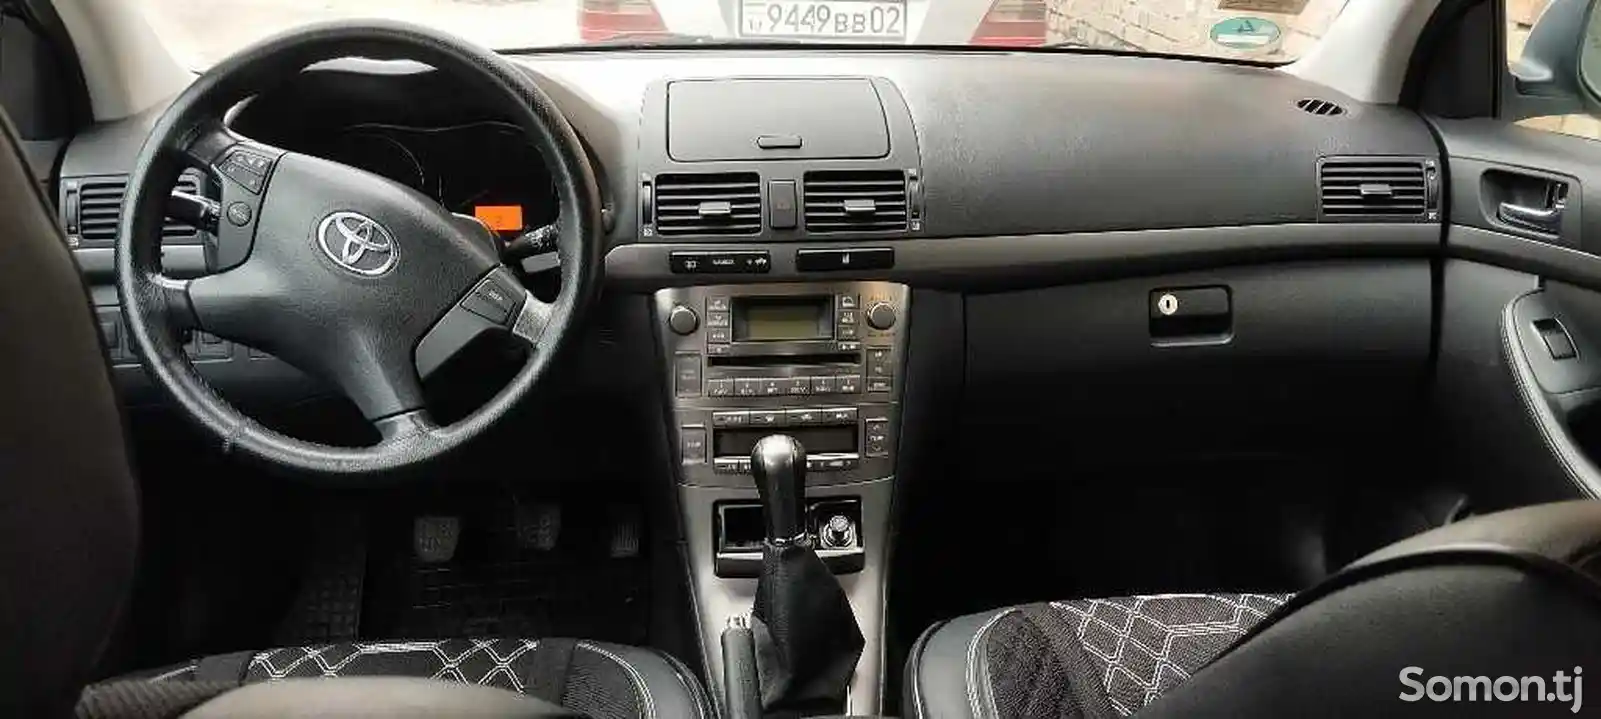 Toyota Avensis, 2007-13